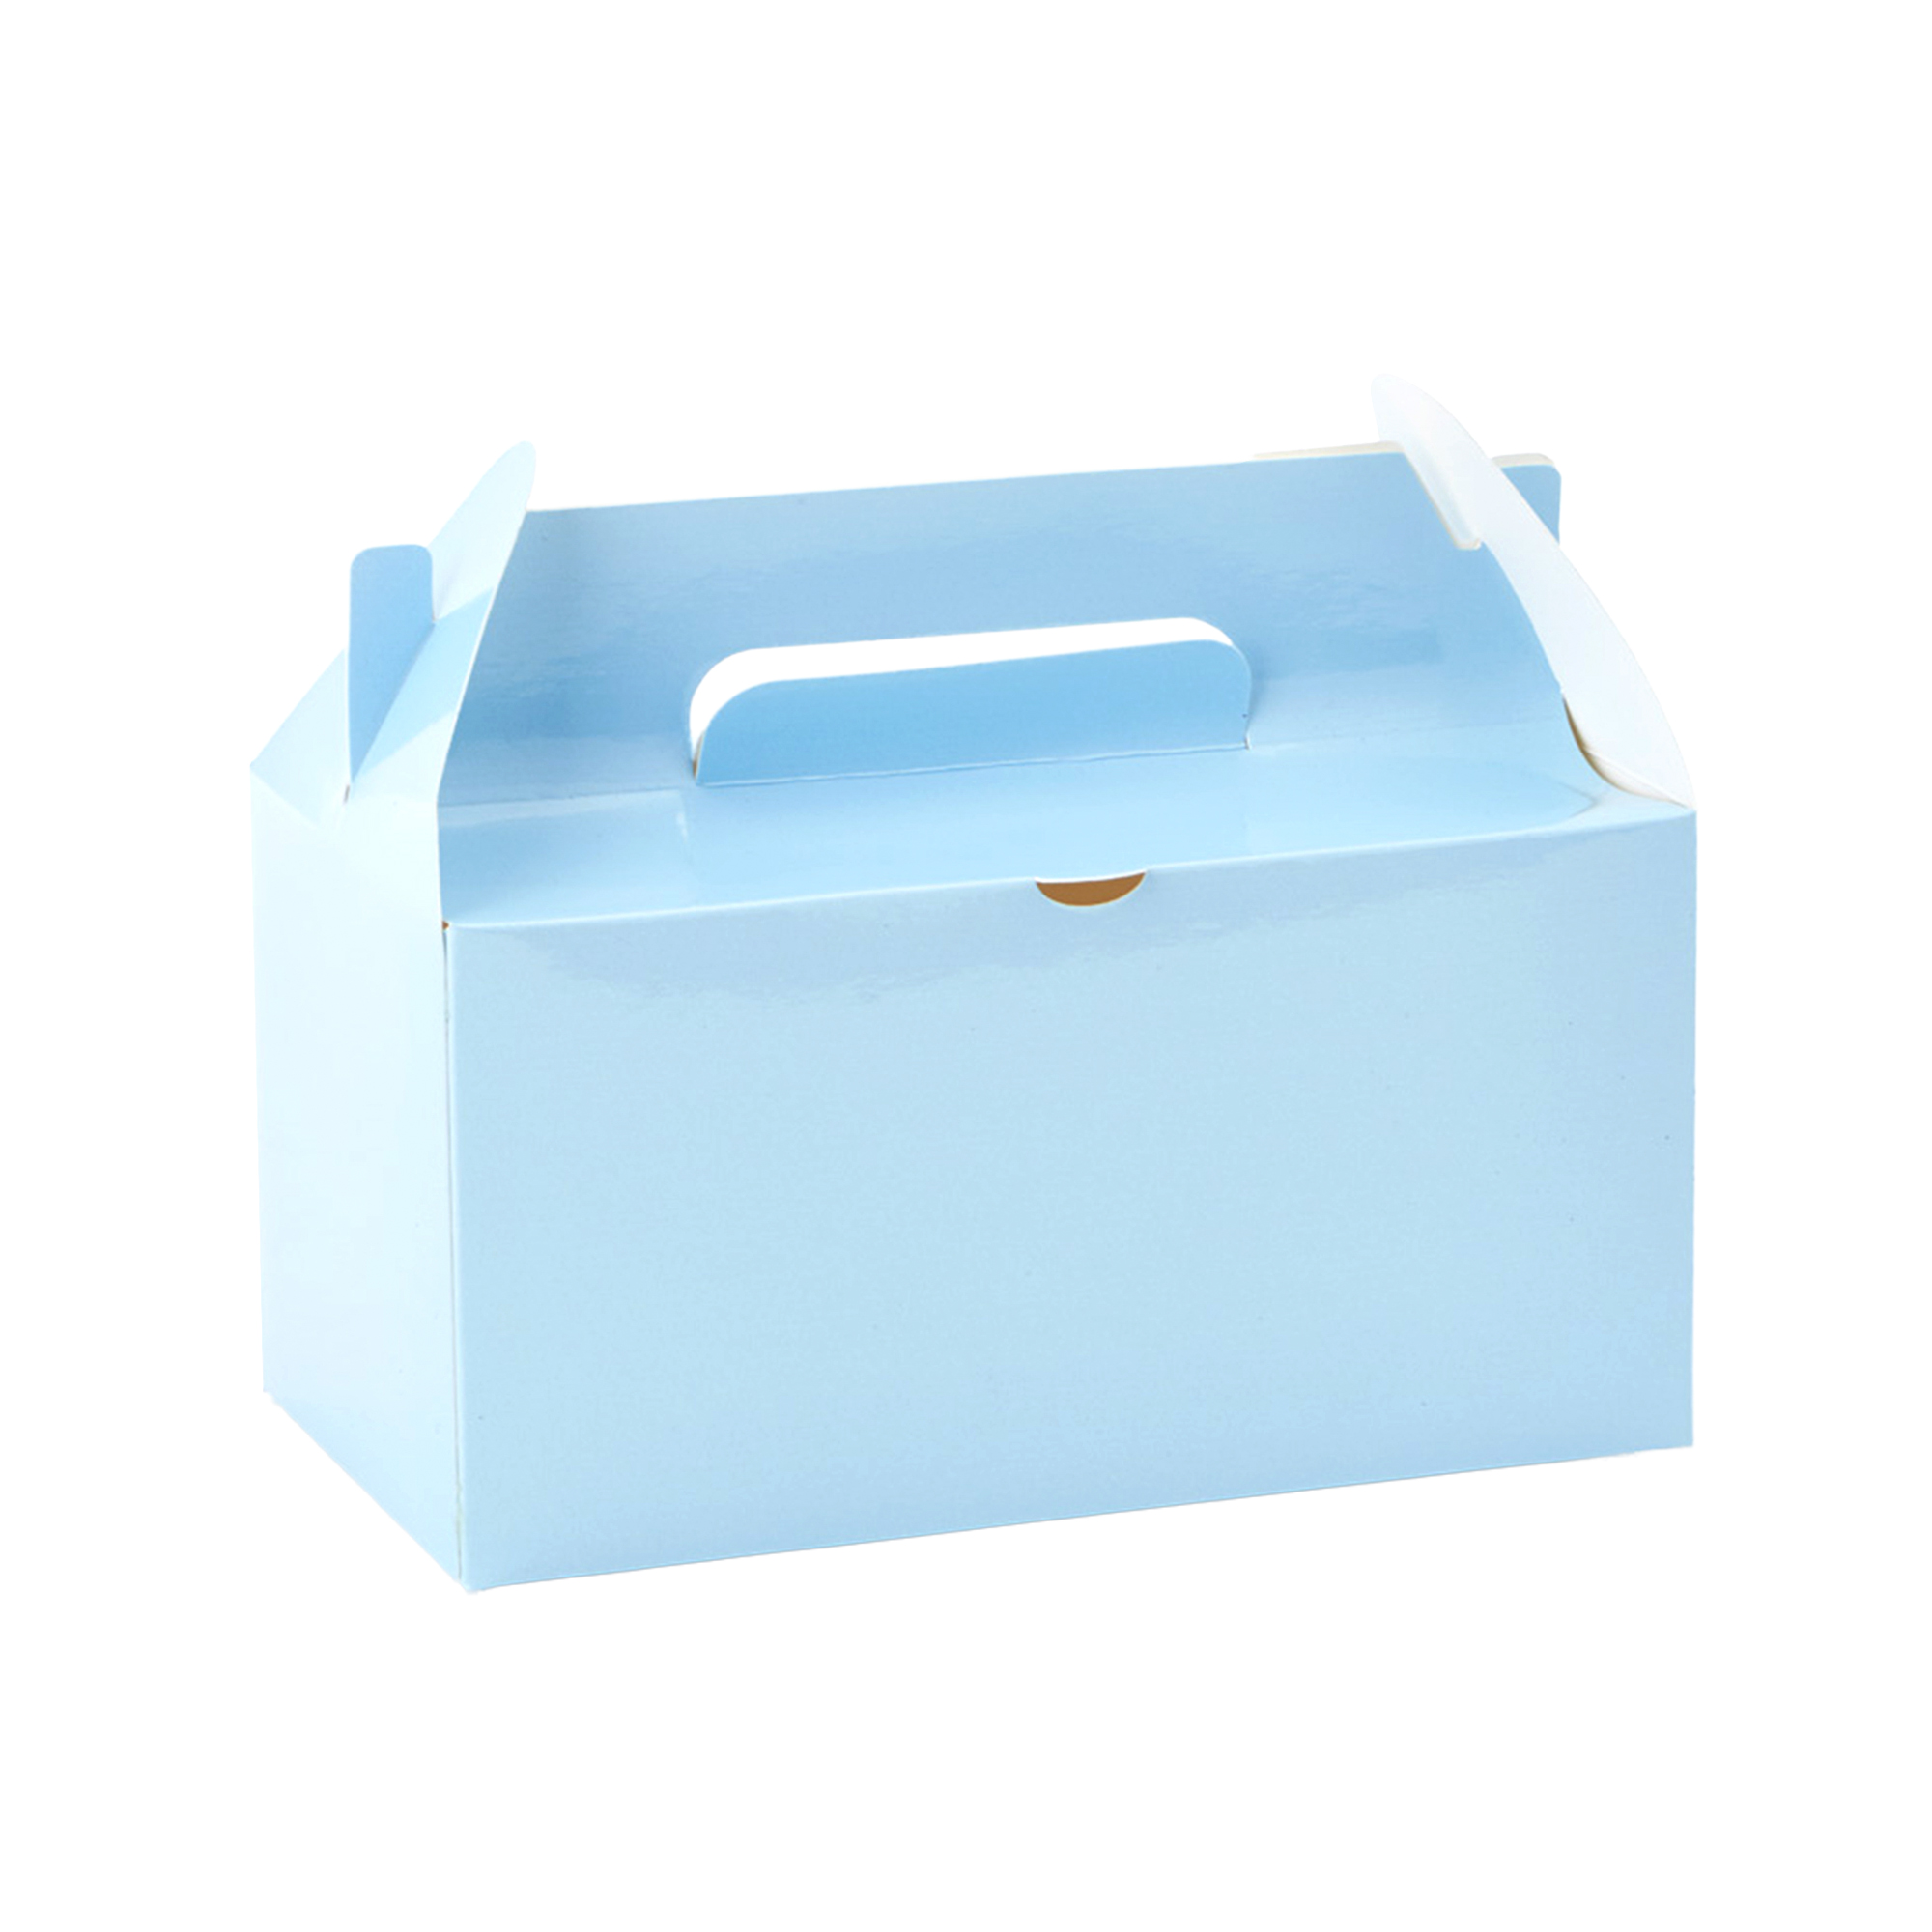 Takeout Box 12pcs/bag - Blue